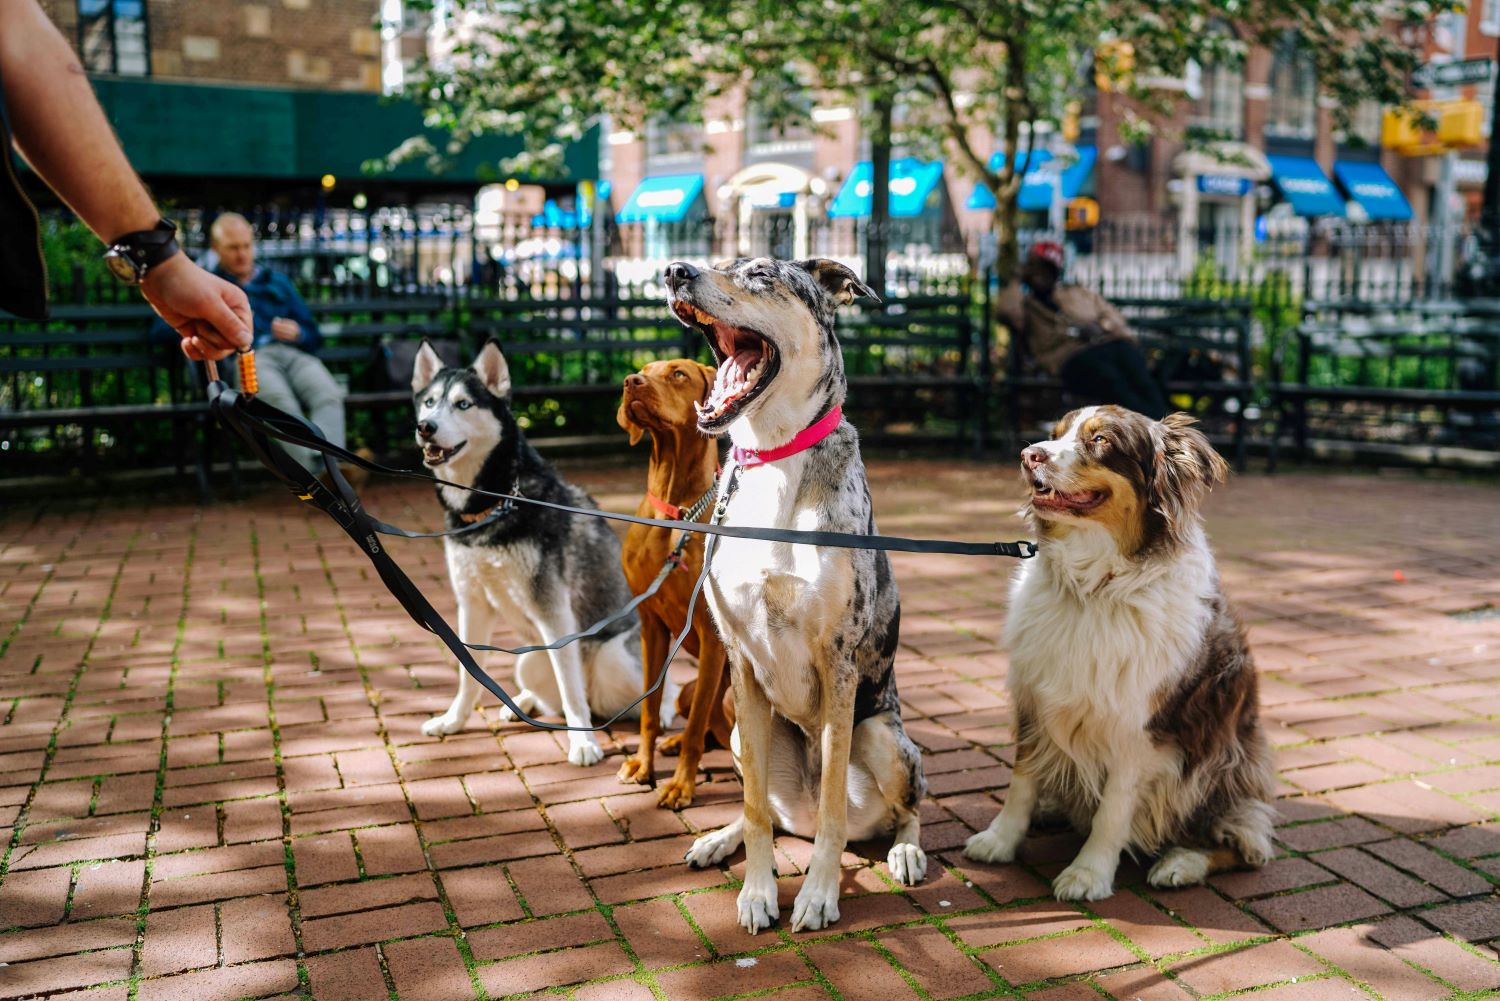 Gezeigt sind vier Hunde, die mit einem Hundesitter spazieren gehen.